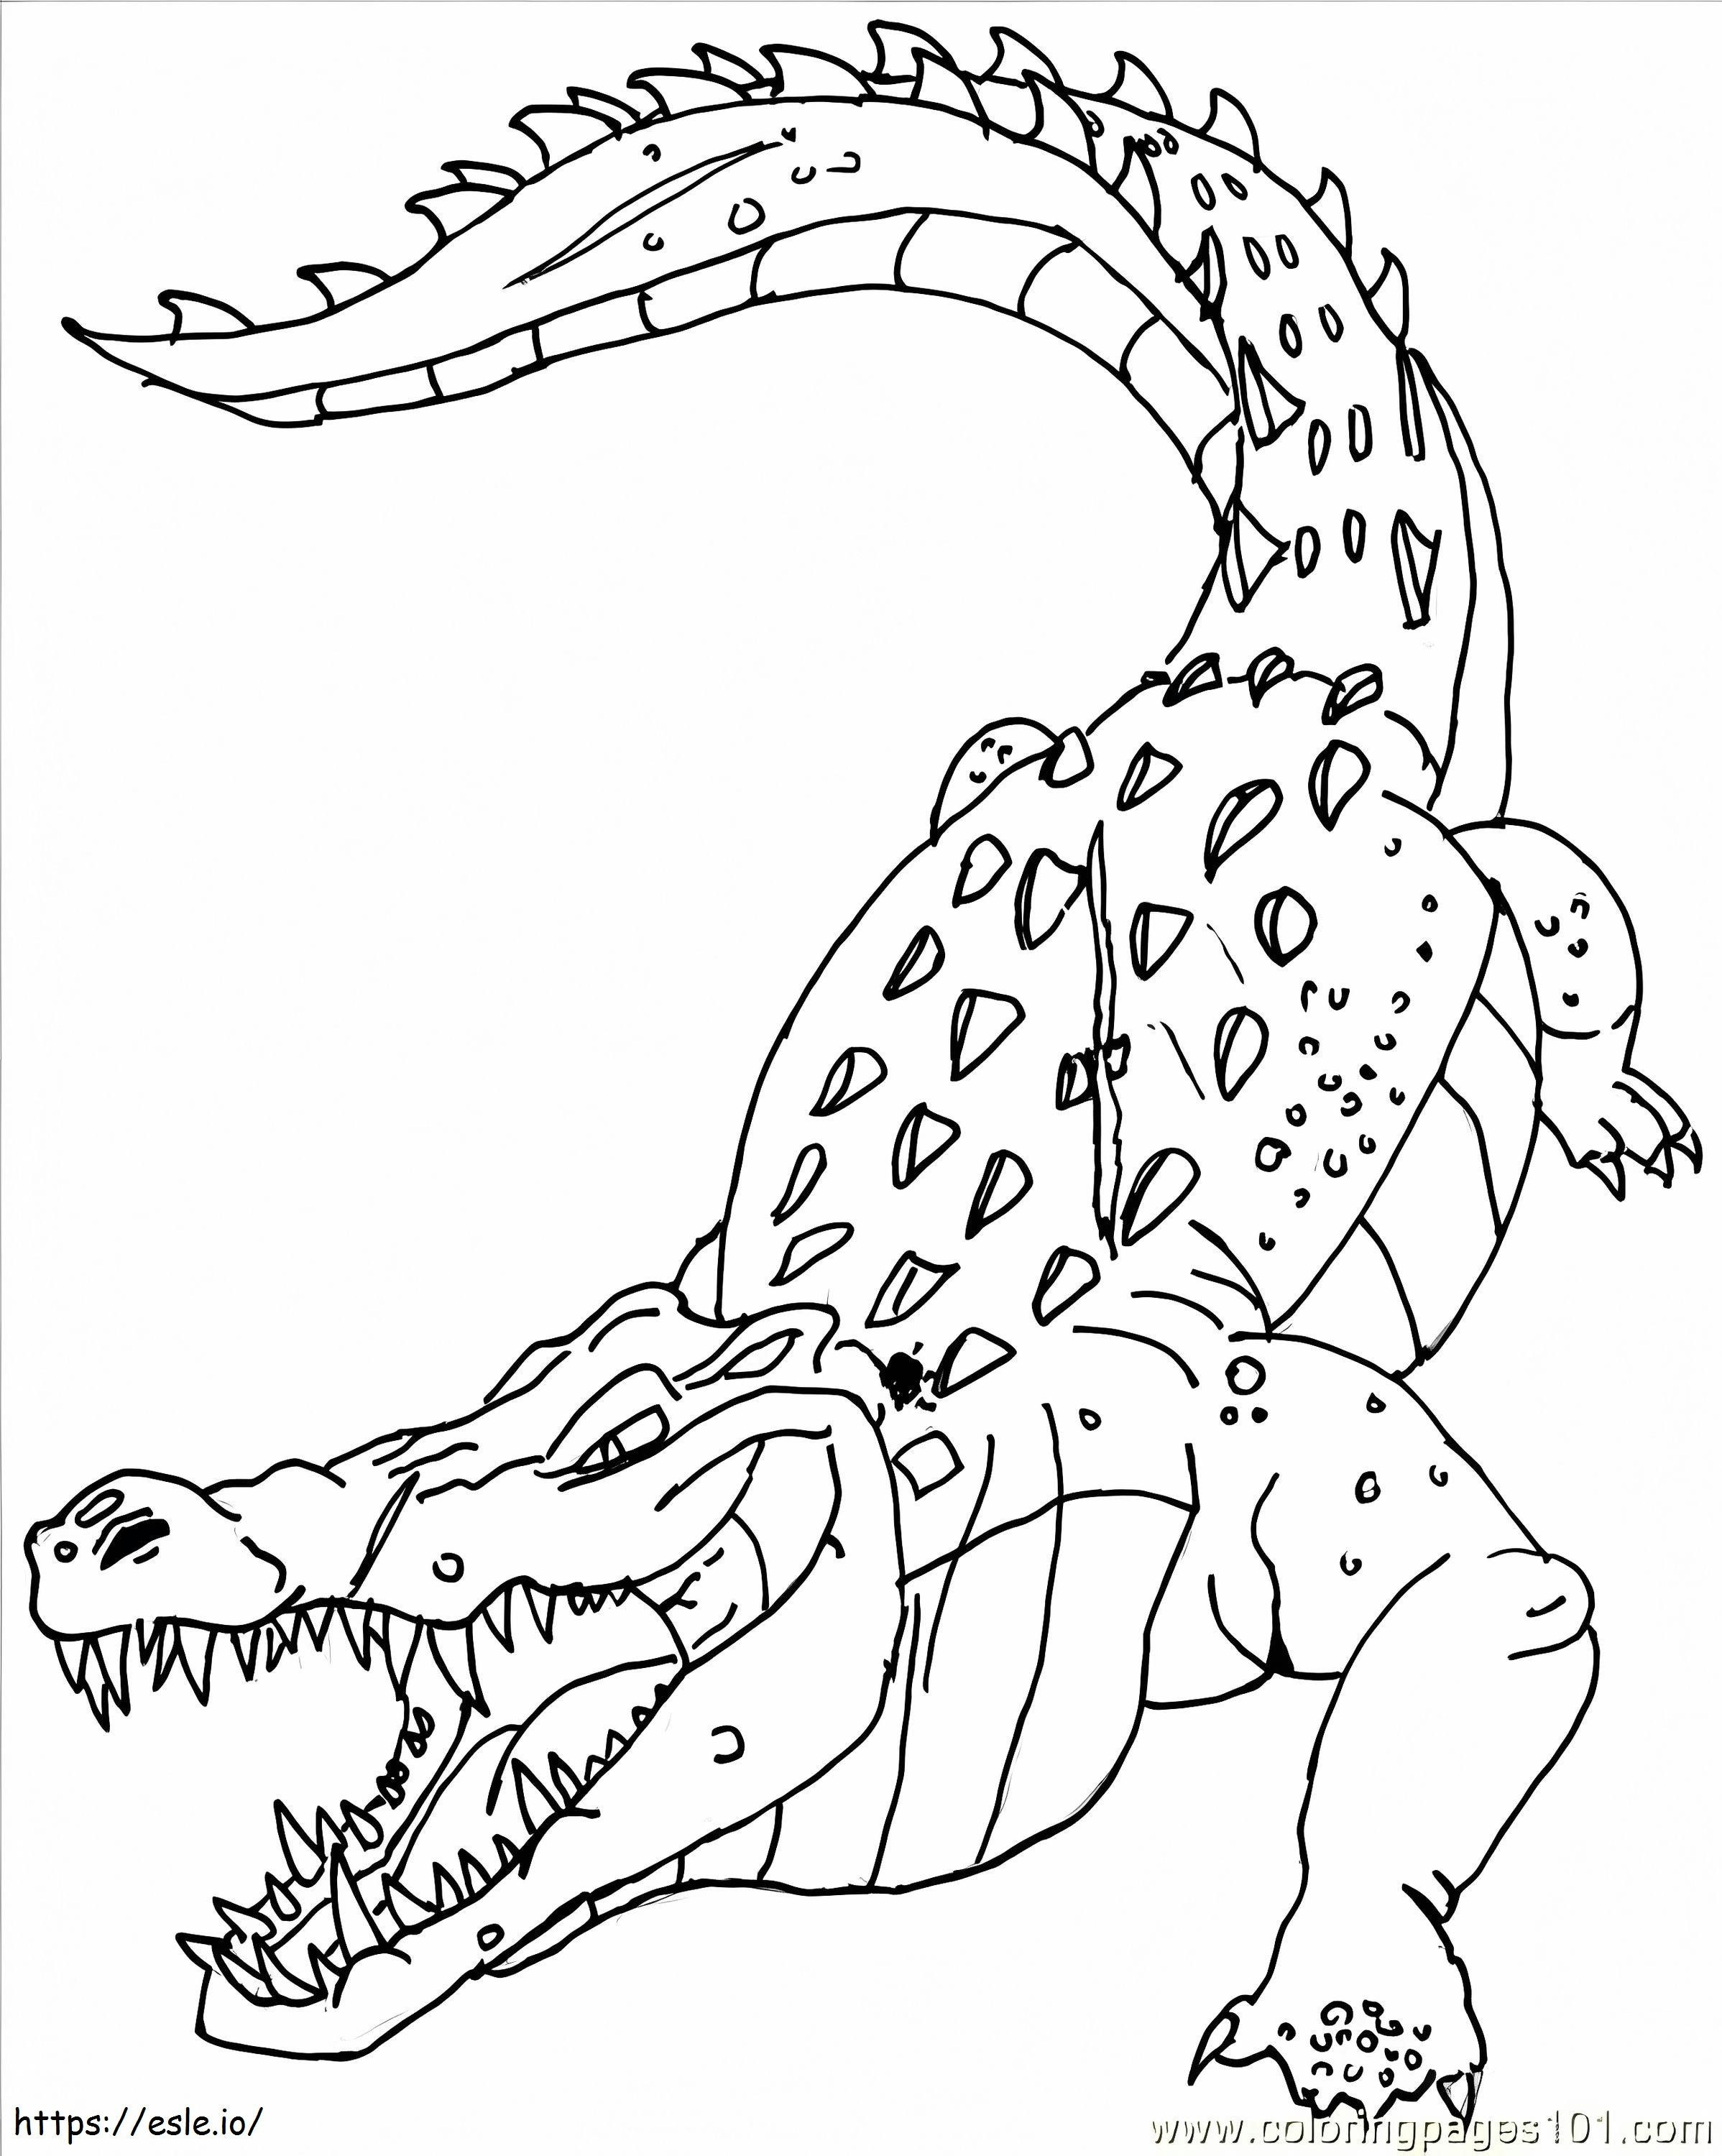 Wściekły krokodyl 1 kolorowanka